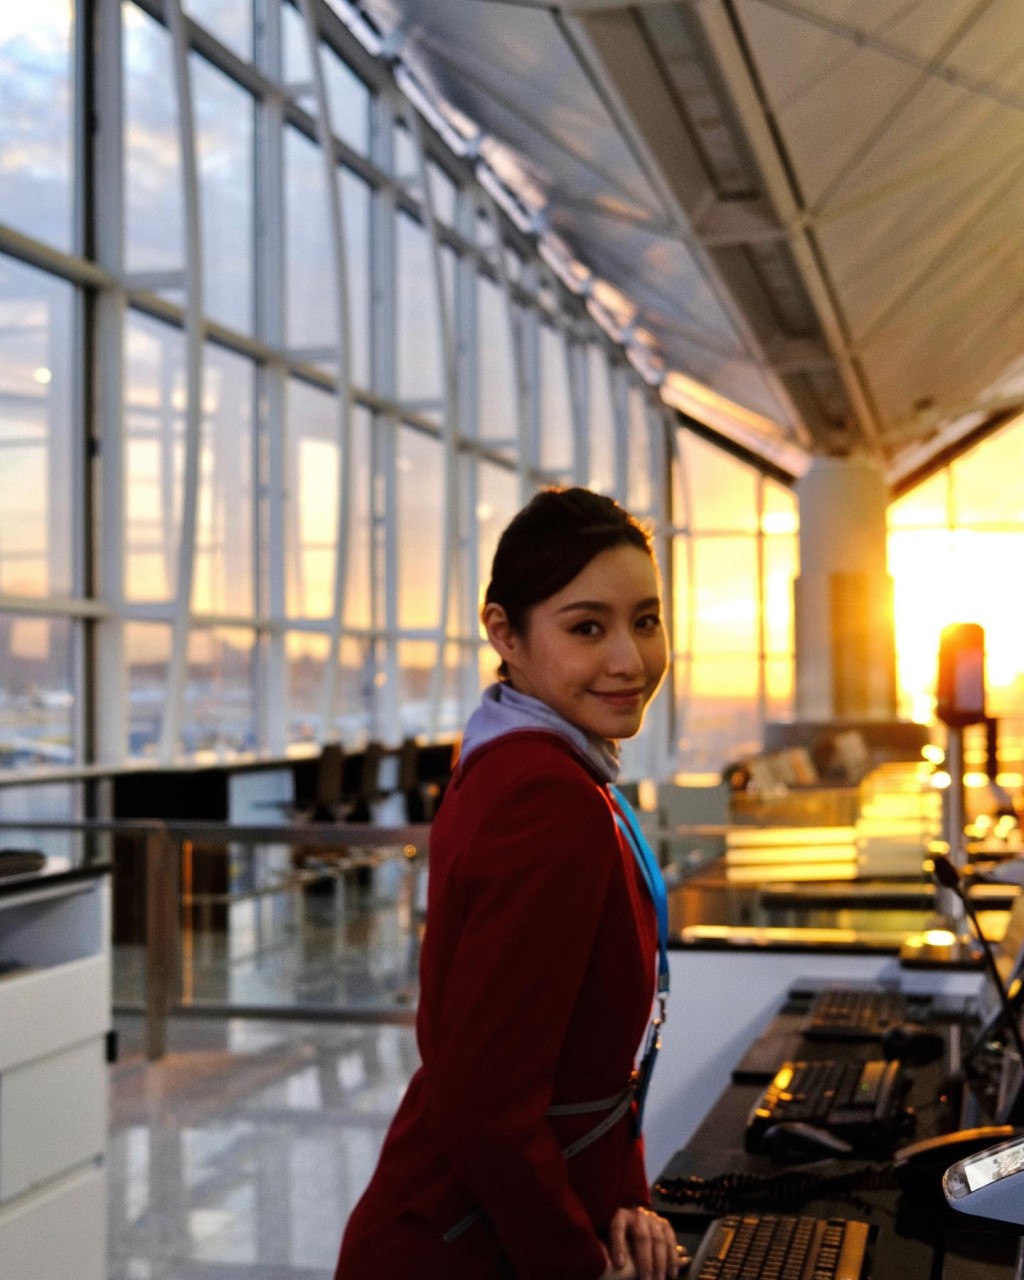 虽然苏可欣在TVB发展看似有不少机会，但早前她透露未考虑续约，有意重返航空业。